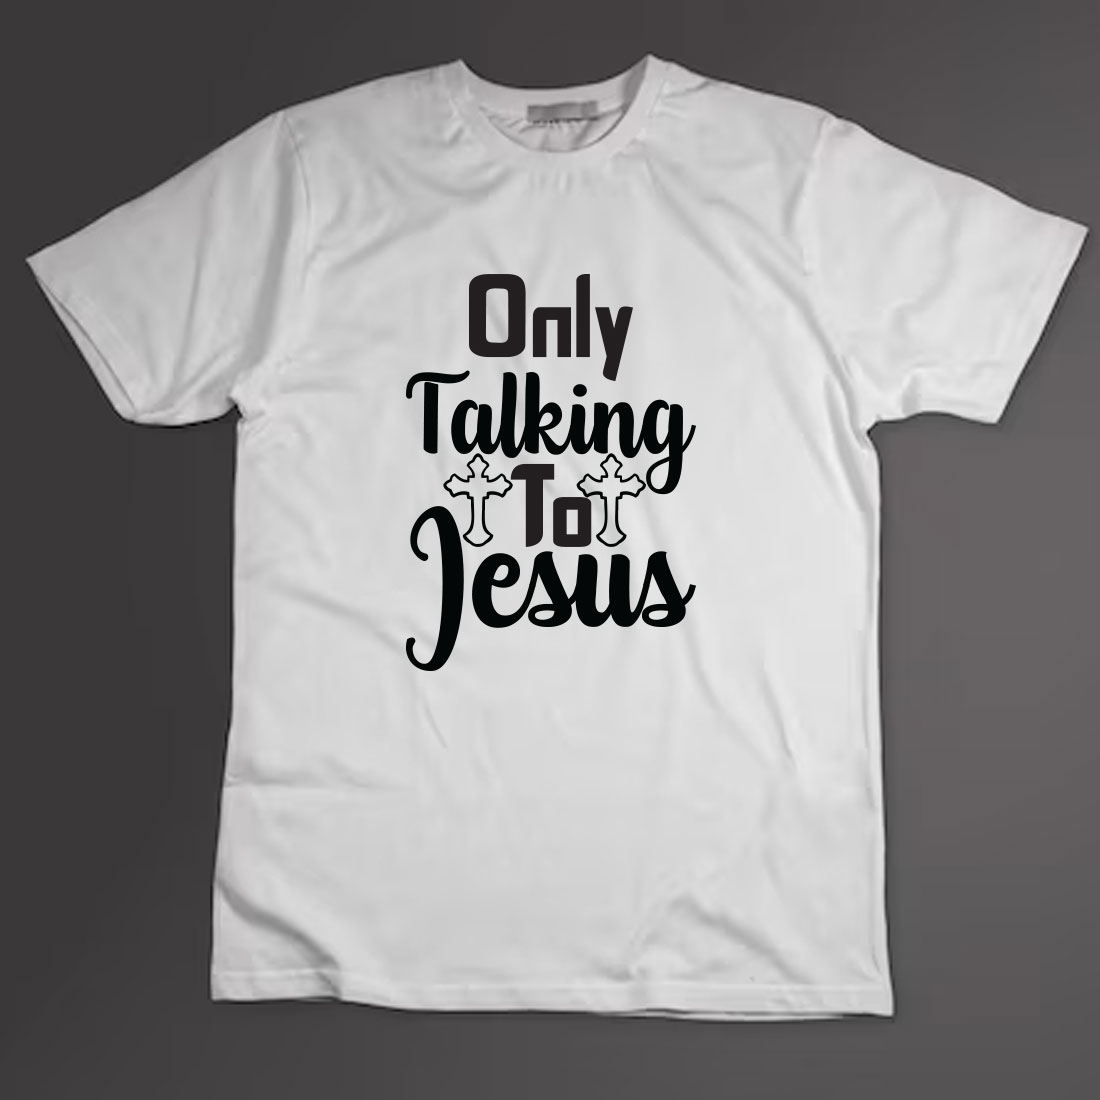 Christian T-shirt Design Bundle Vol-32 preview image.